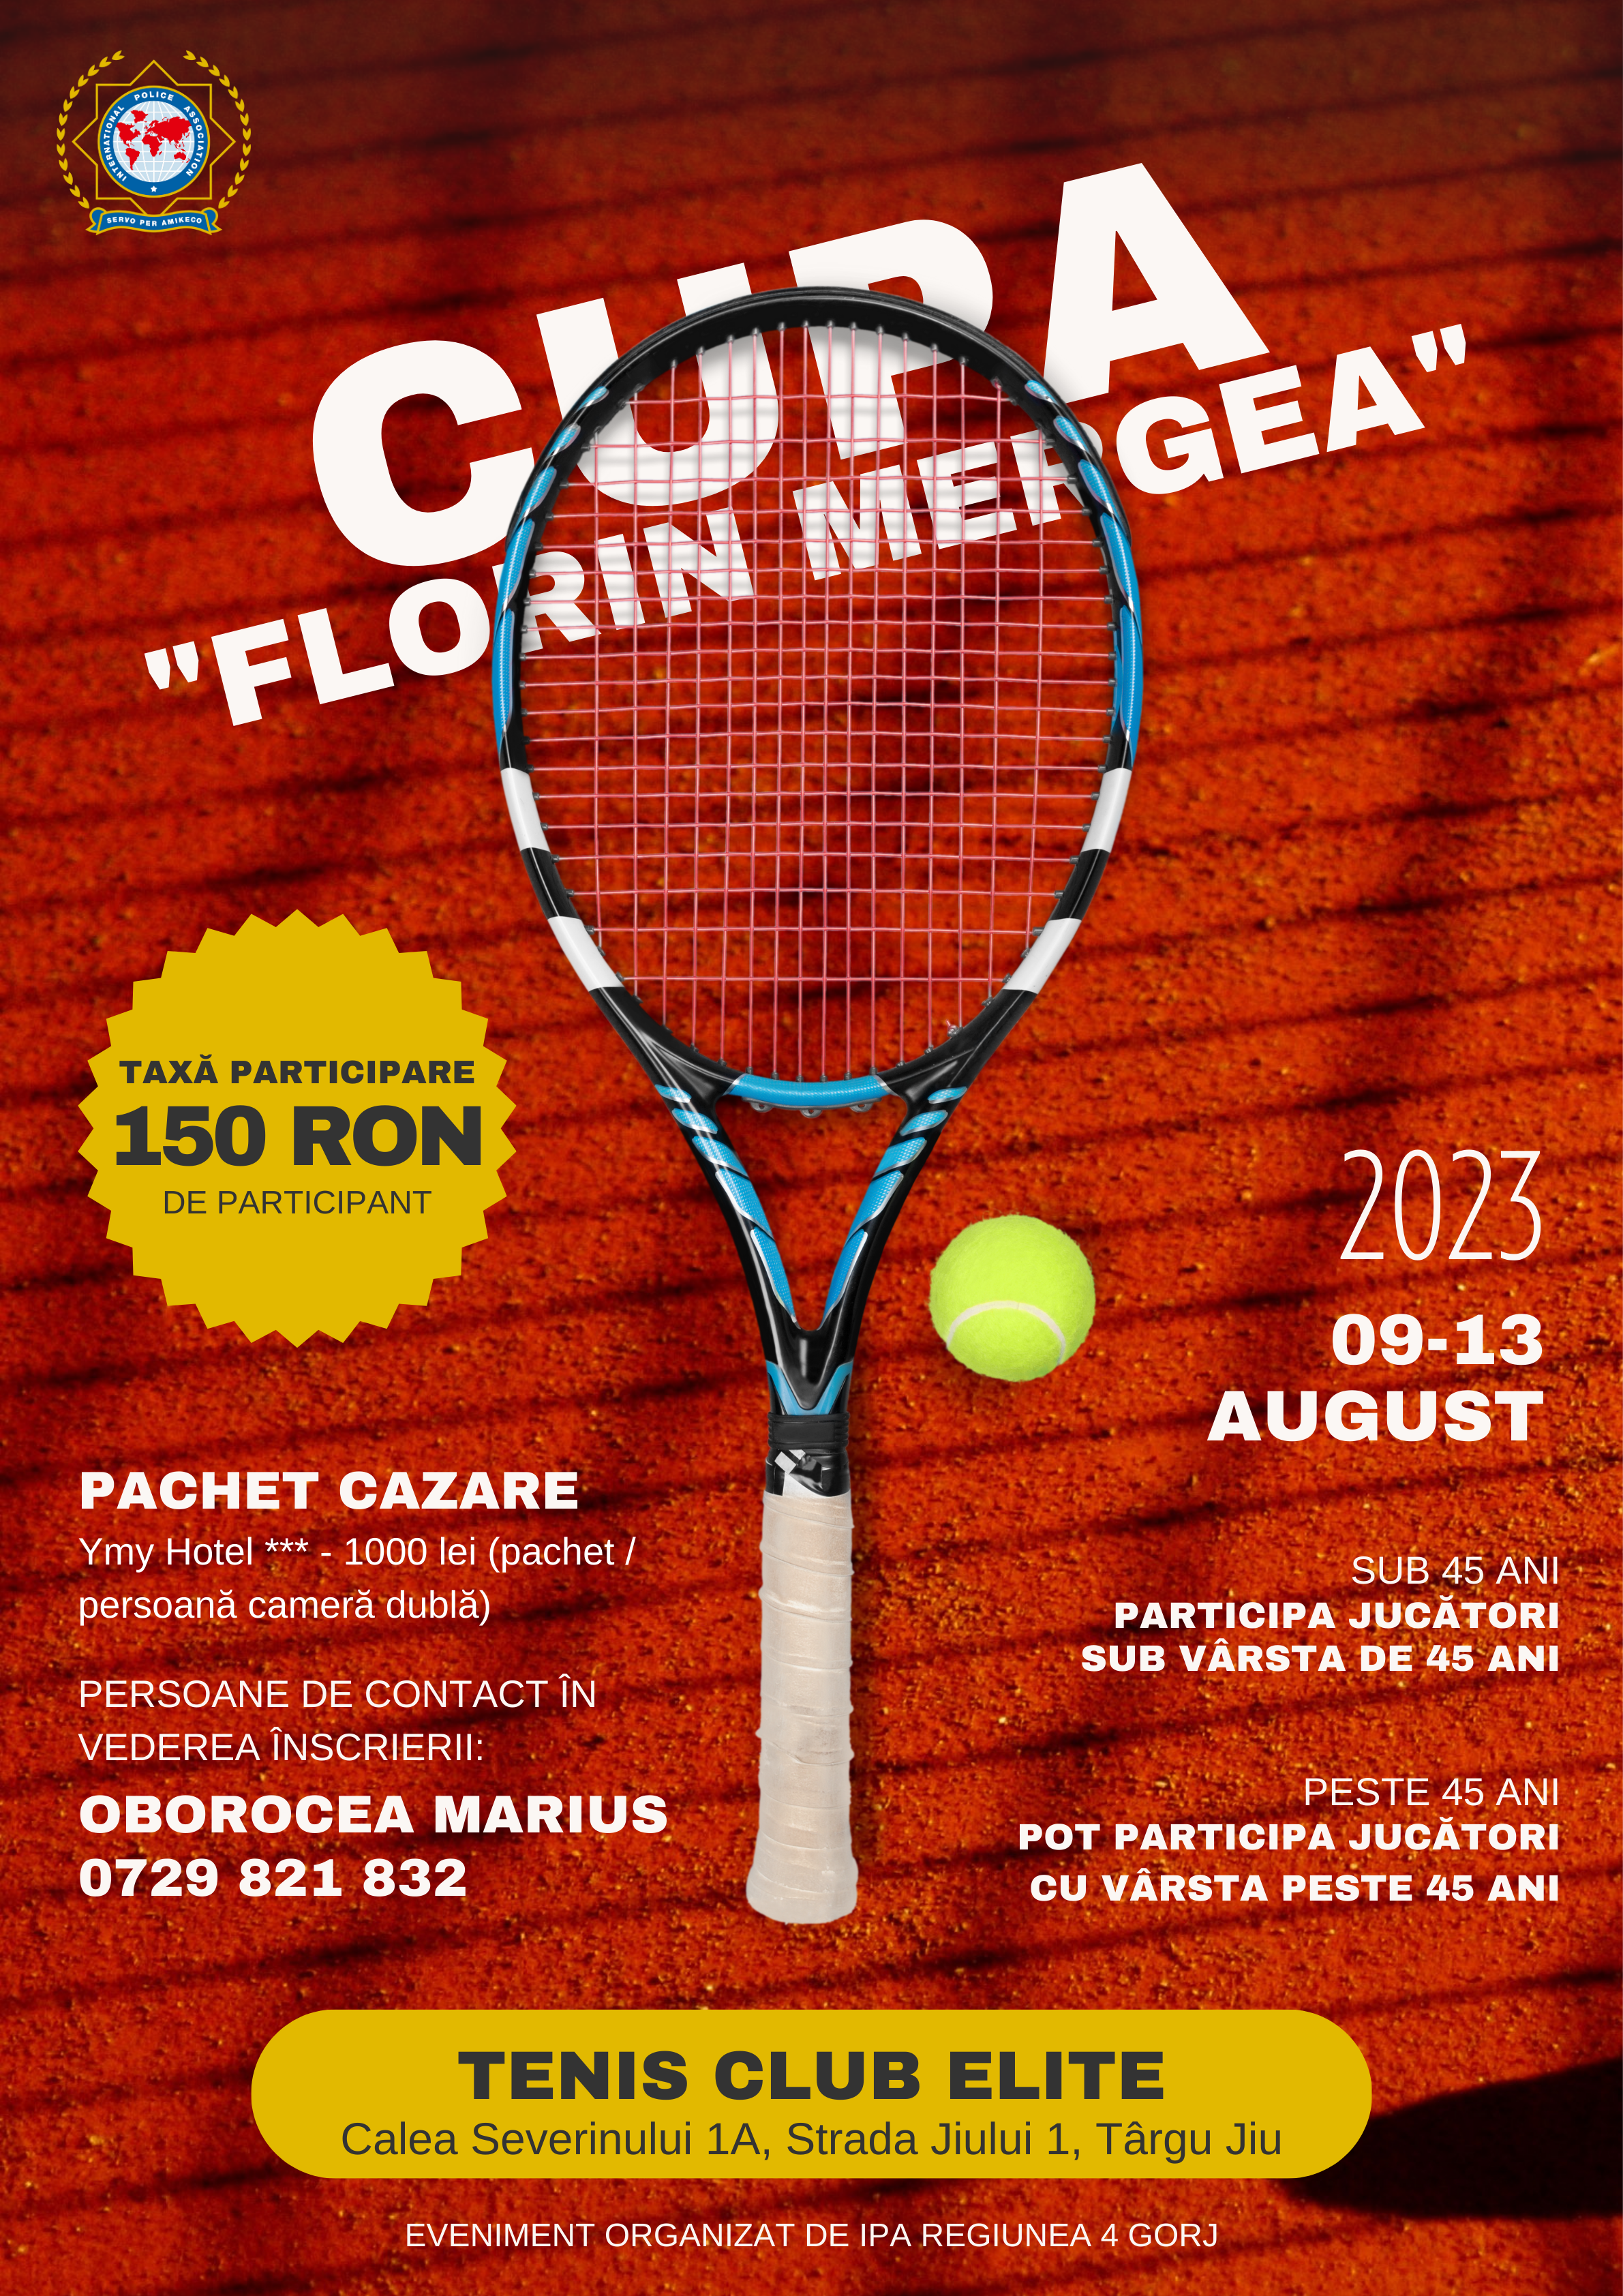 August vine cu o nouă competiție incendiară: ”Cupa Florin Mergea” la tenis de câmp, organizată de IPA Regiunea 4 Gorj!